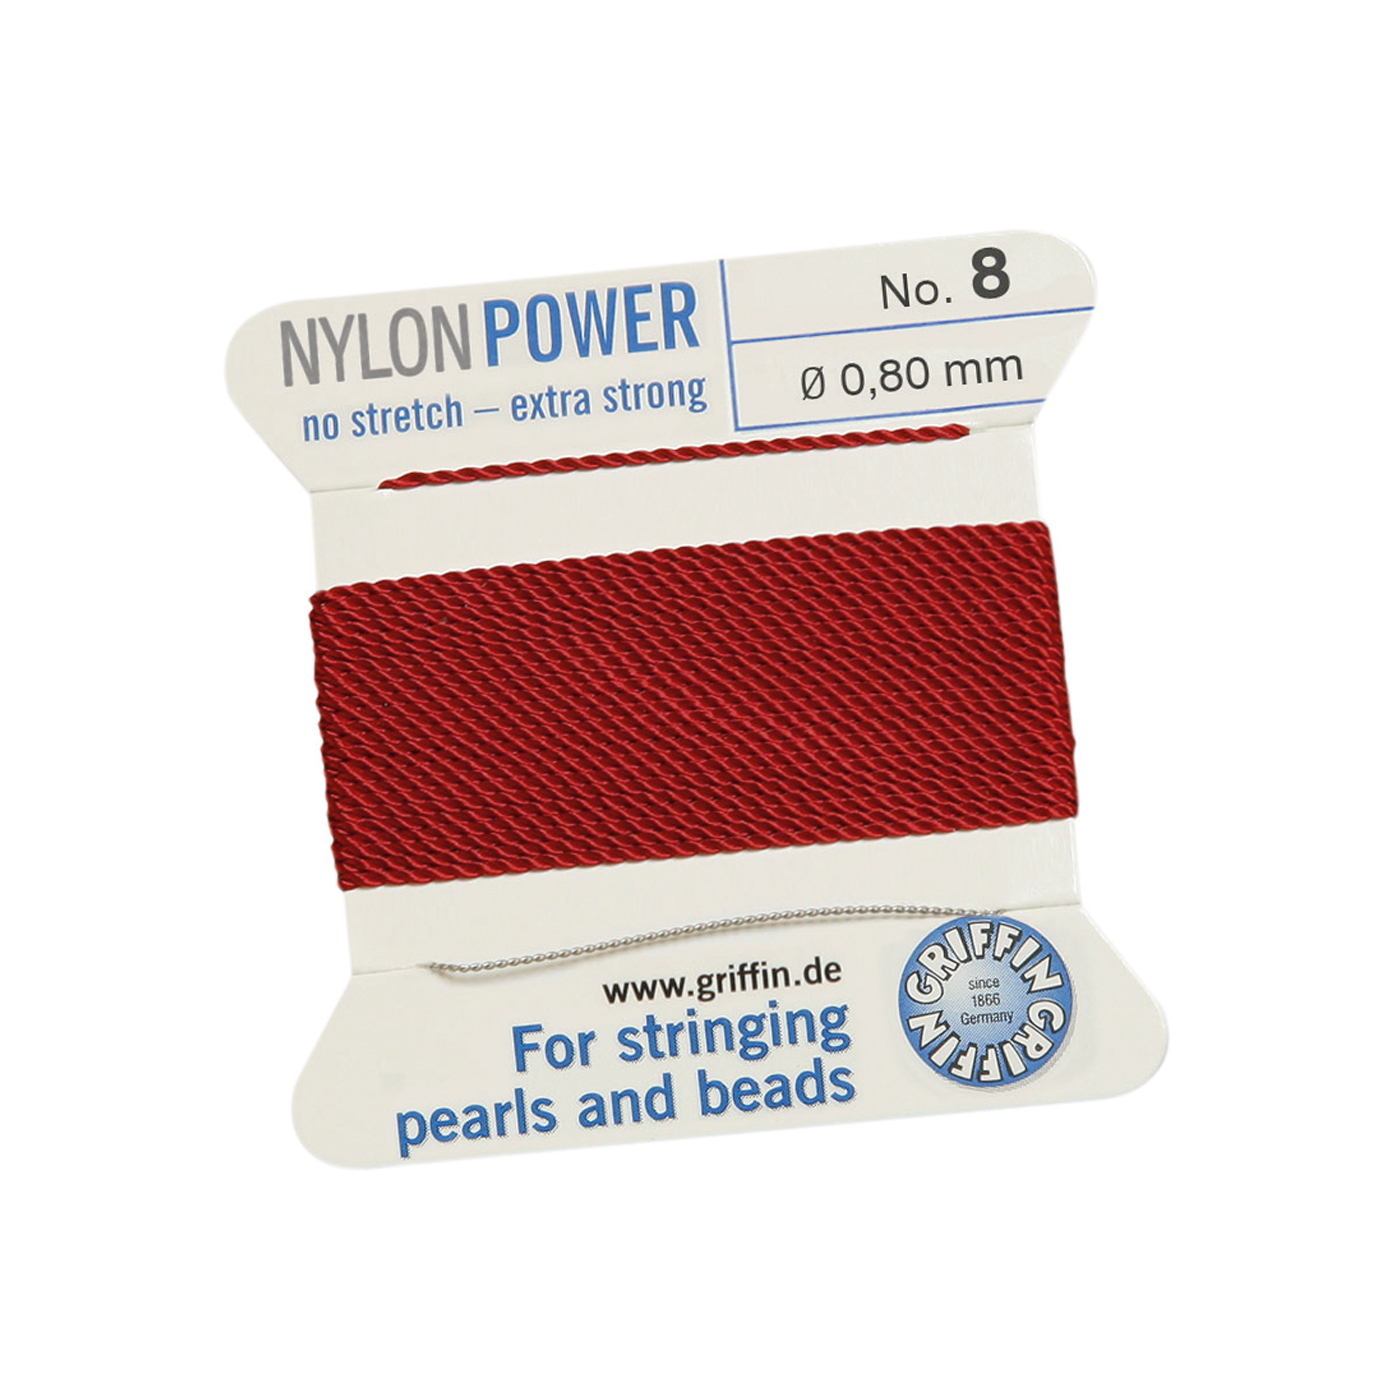 Bead Cord NylonPower, Garnet Red, No. 8 - 2 m